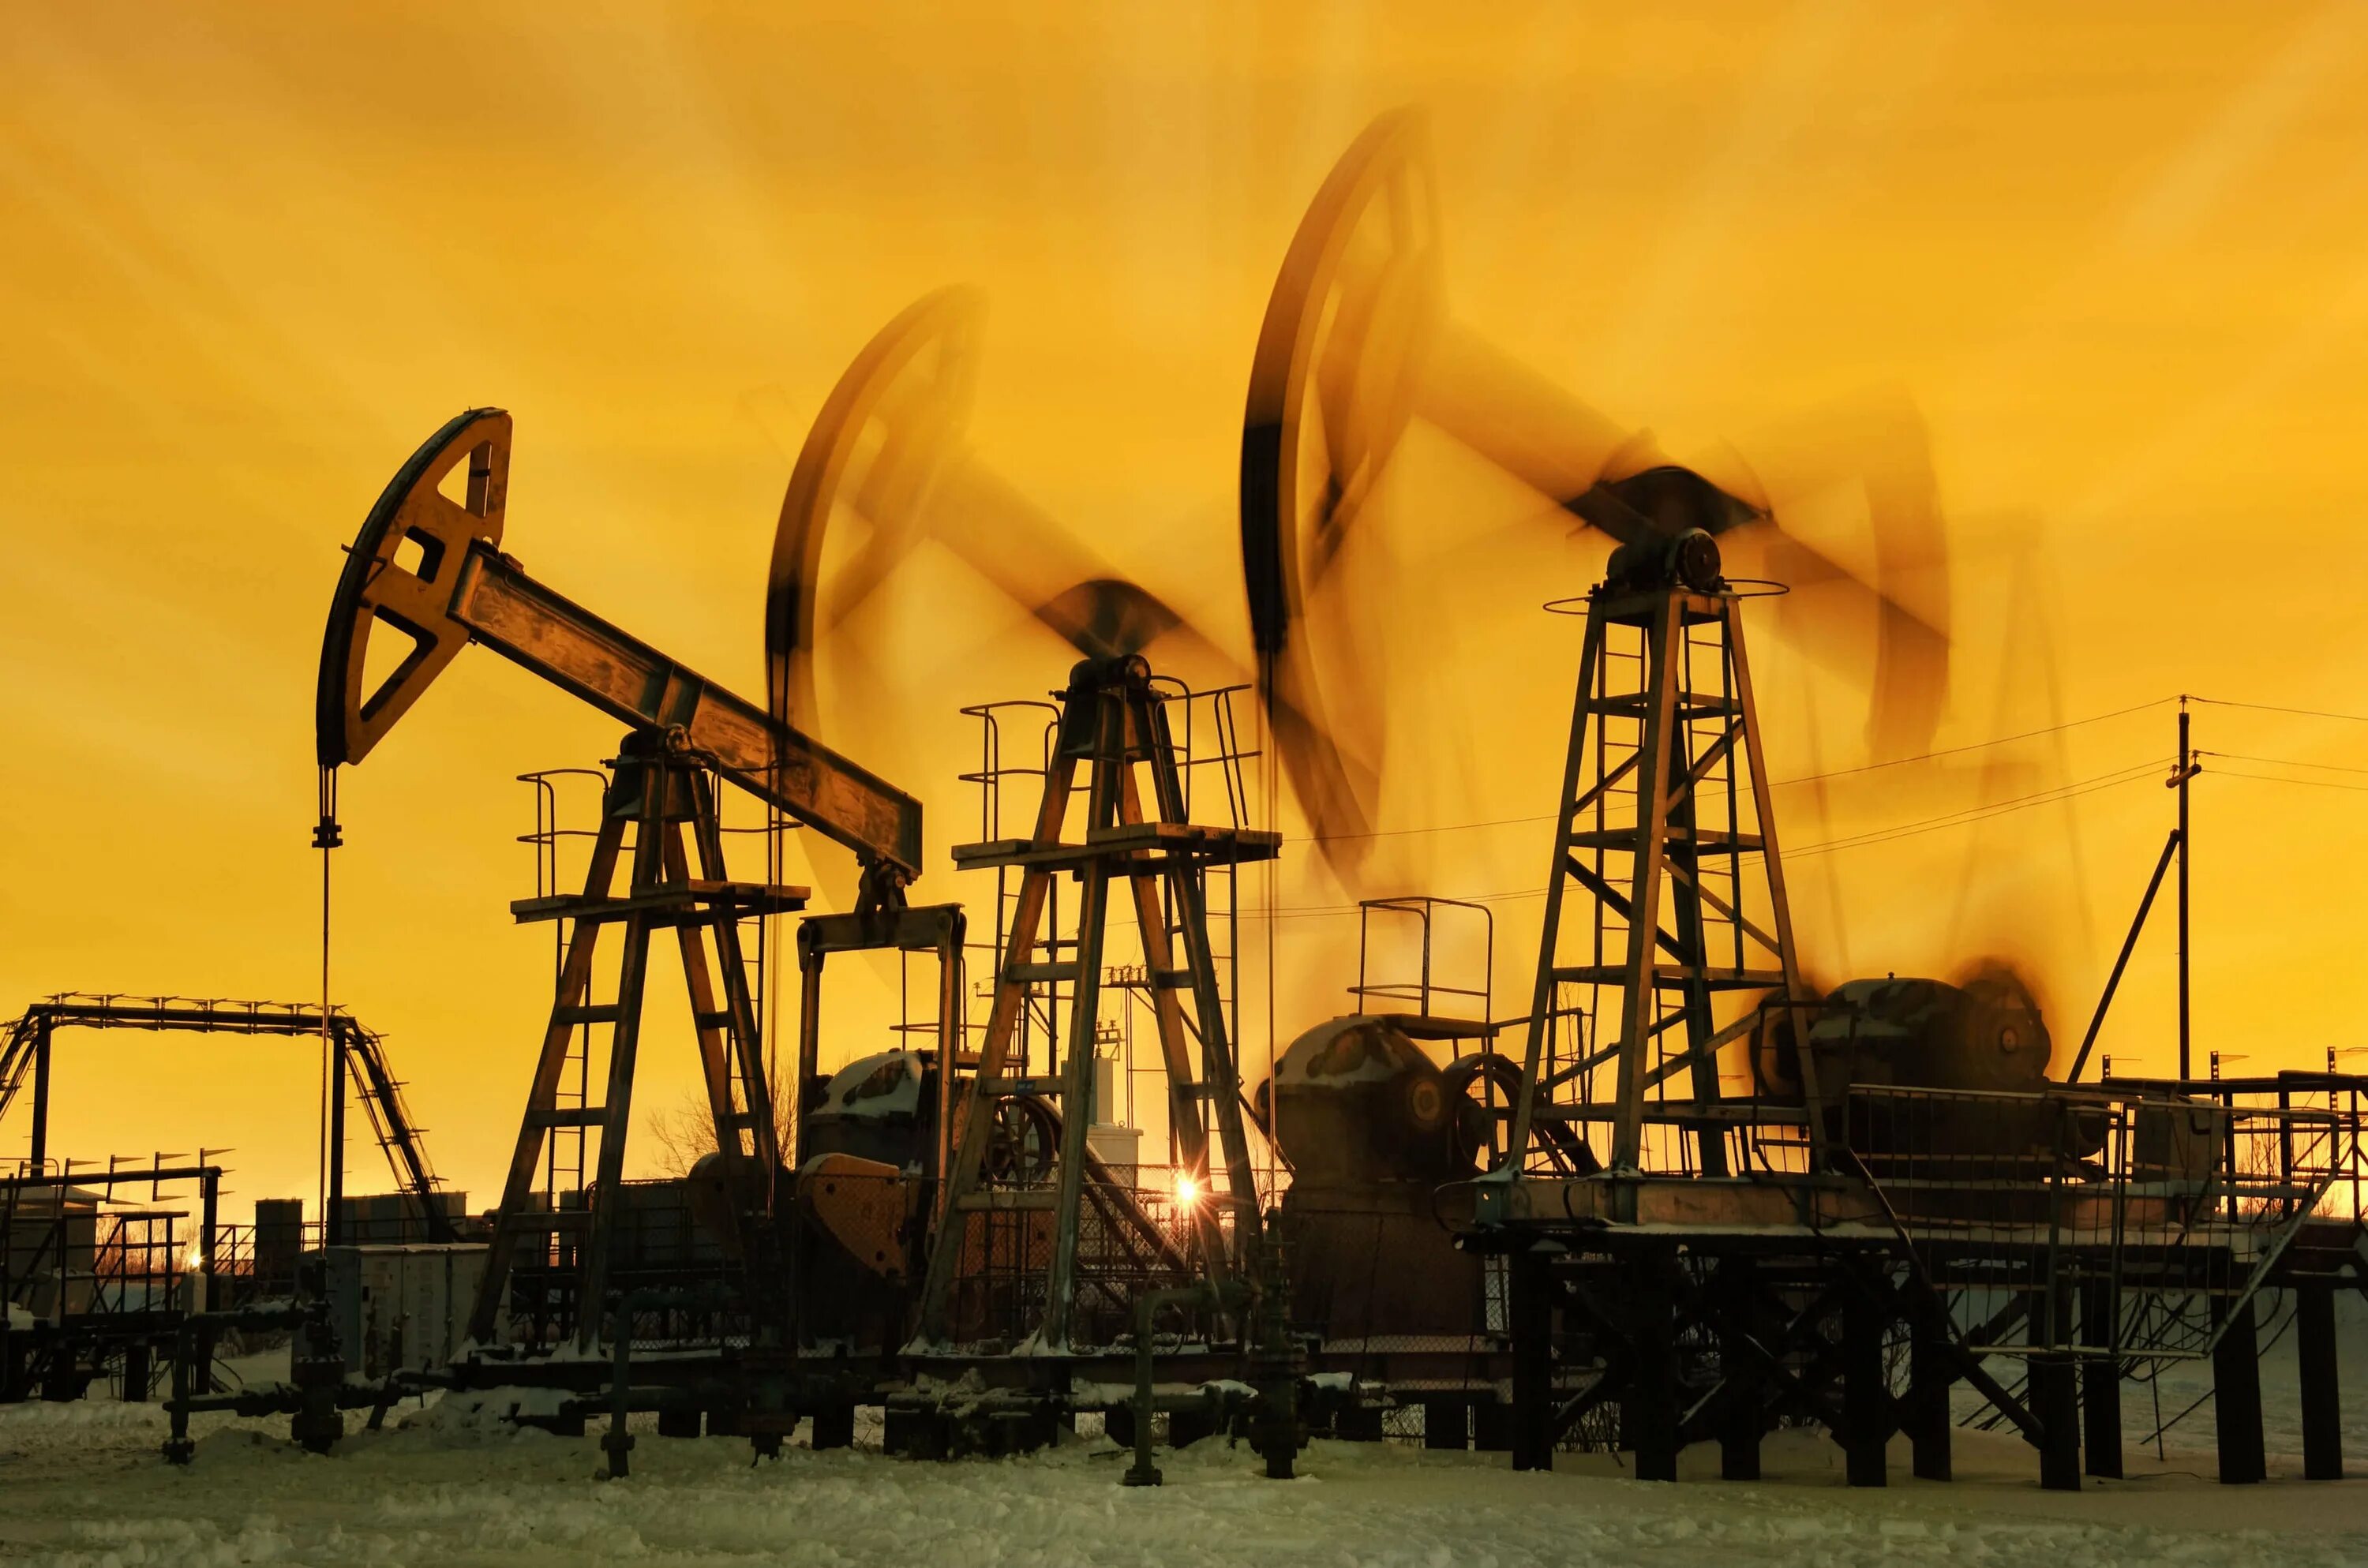 Предприятия по добыче нефти. Нефтяная промышленность. Нефтегазовая отрасль. Нефтепромысел и промышленность. Нефтедобывающая промышленность.